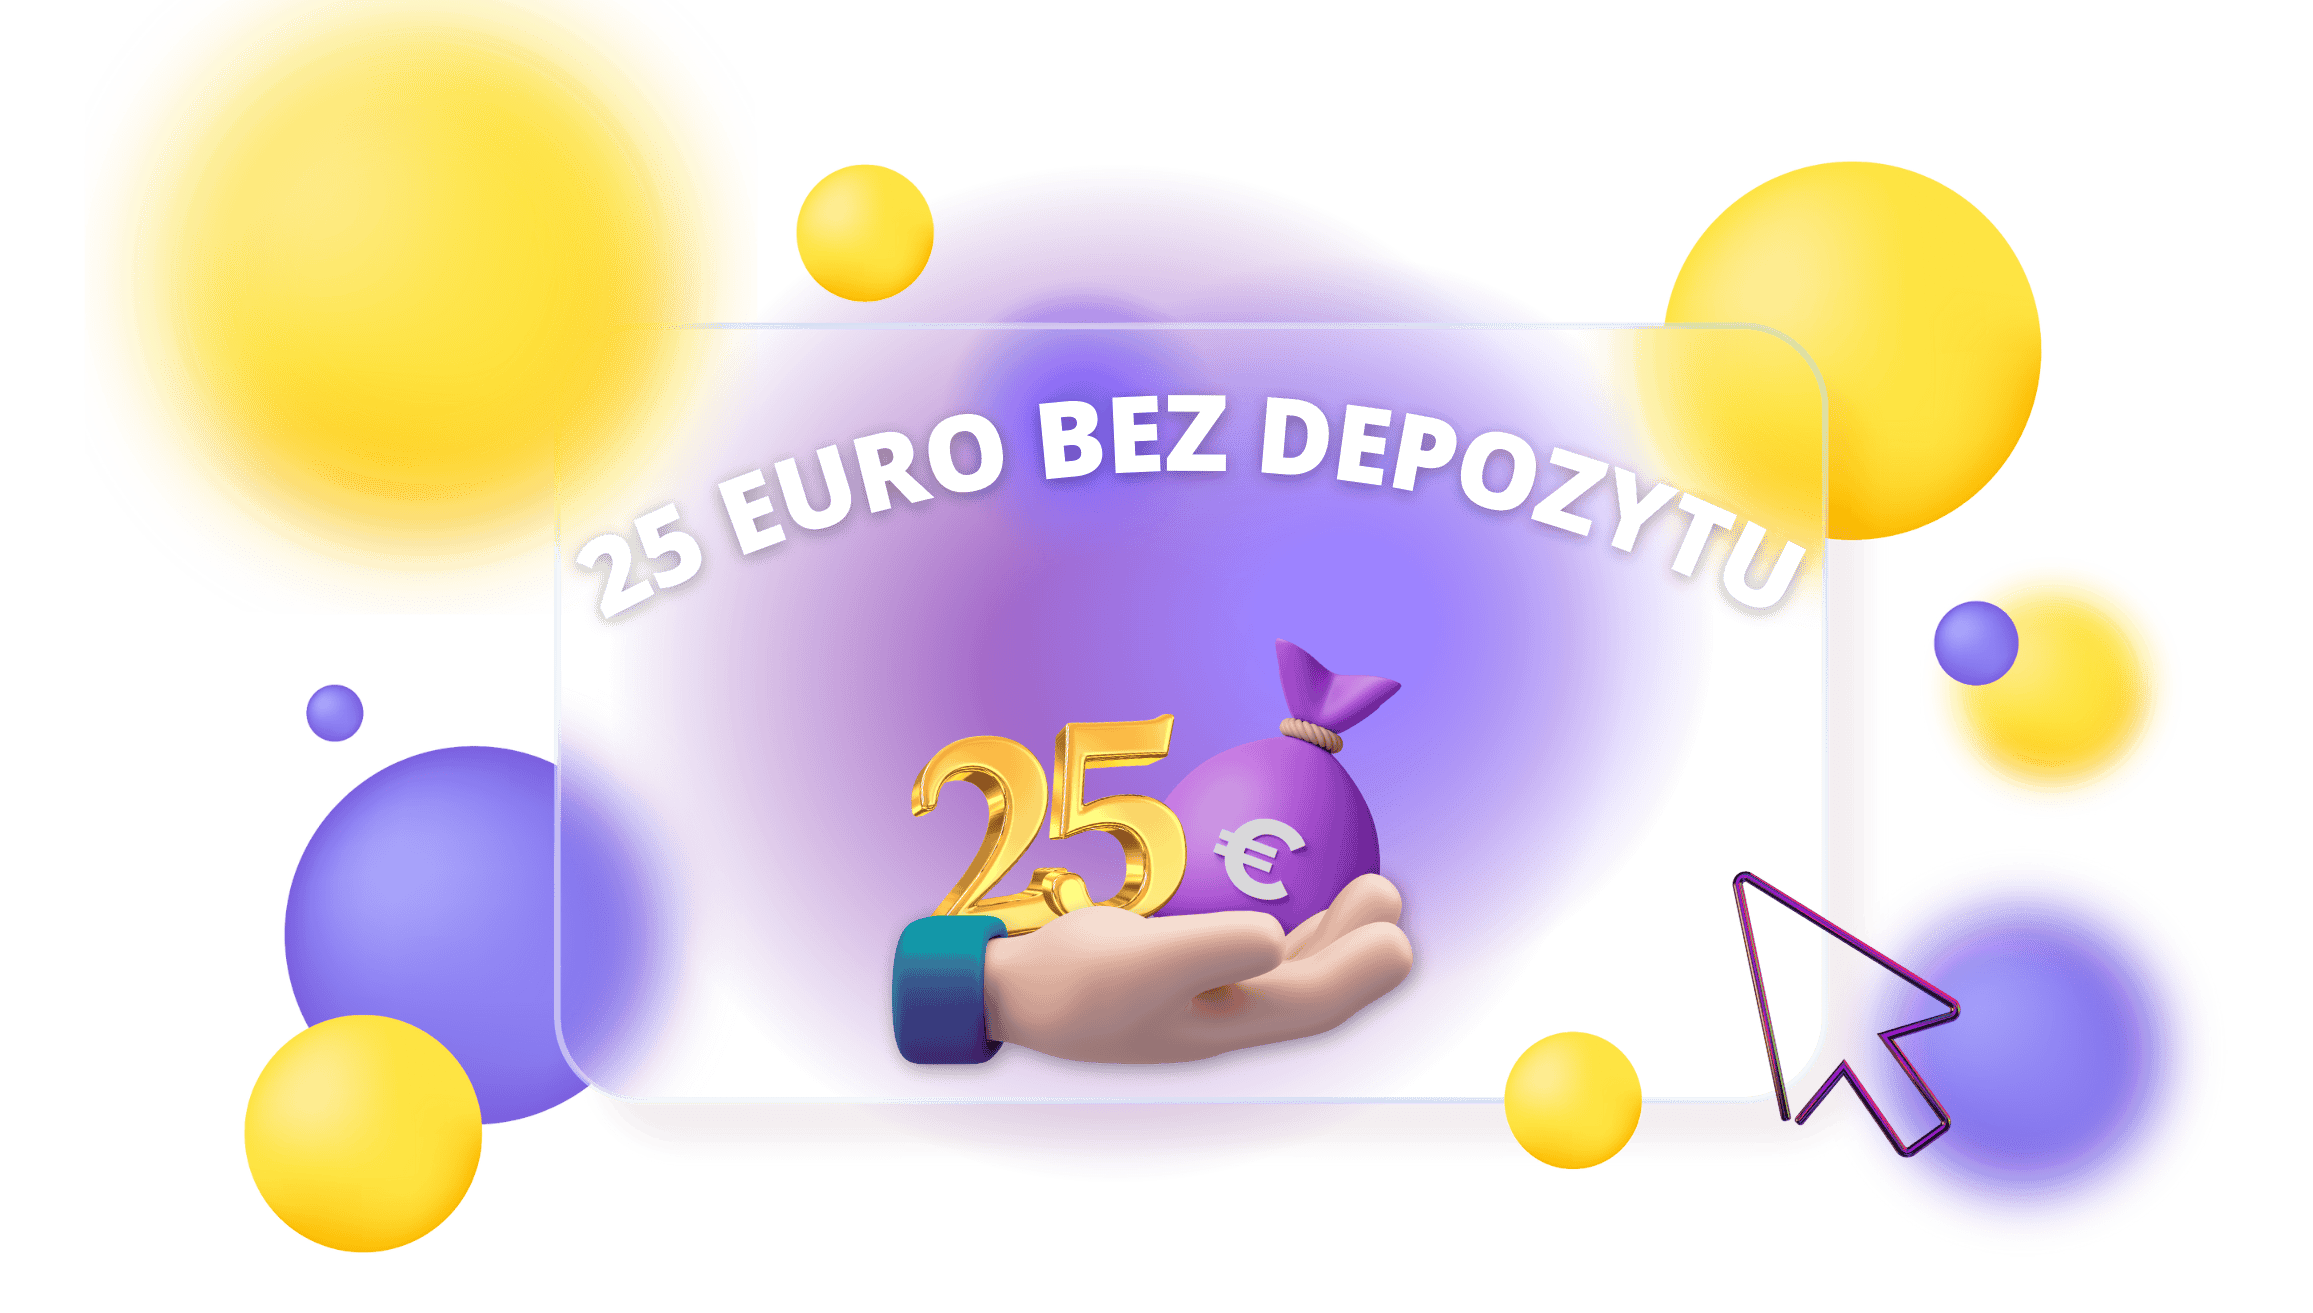 Casino 25 euro bez depozytu za samą rejestrację Nowekasyna-pl.com